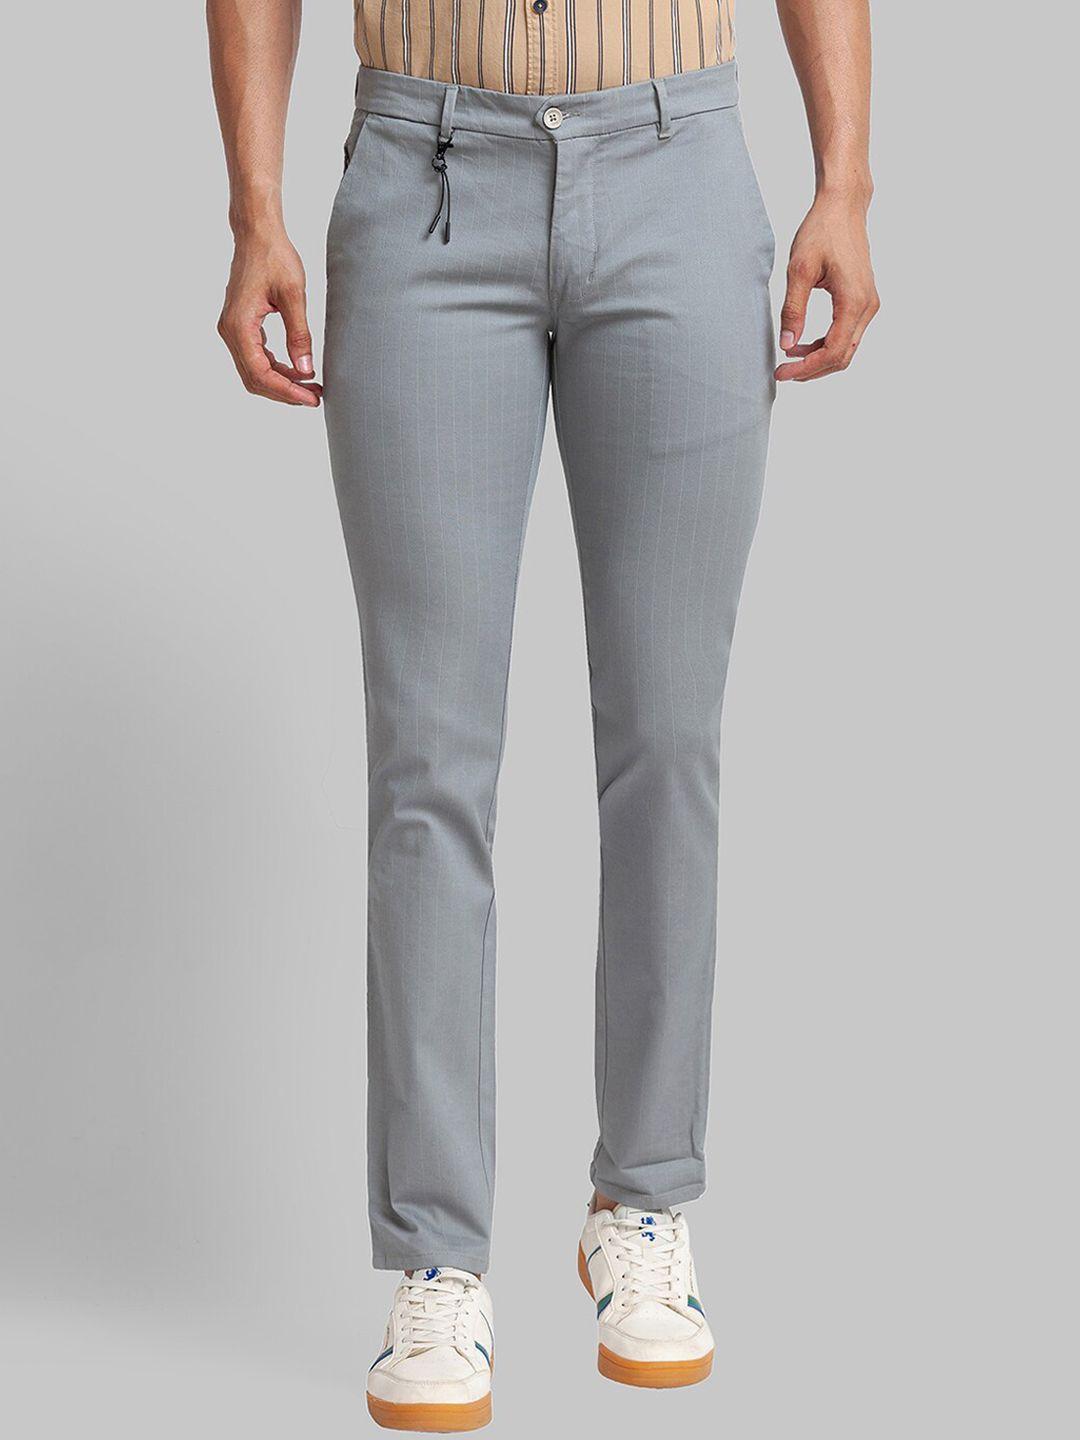 parx-men-striped-slim-fit-mid-rise-trousers